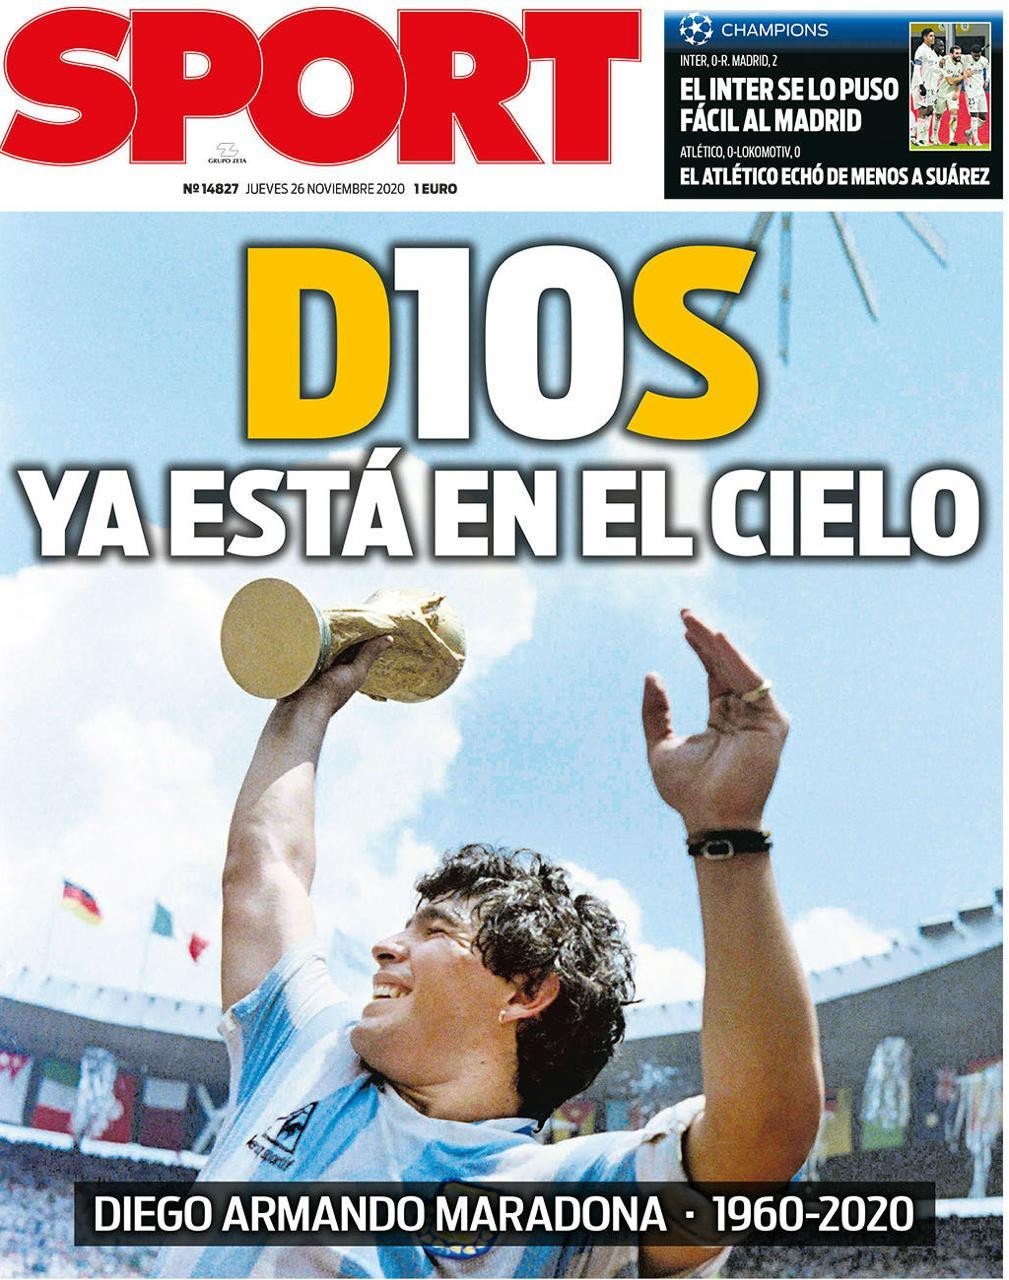 Muerte de Maradona por el diario español Sport